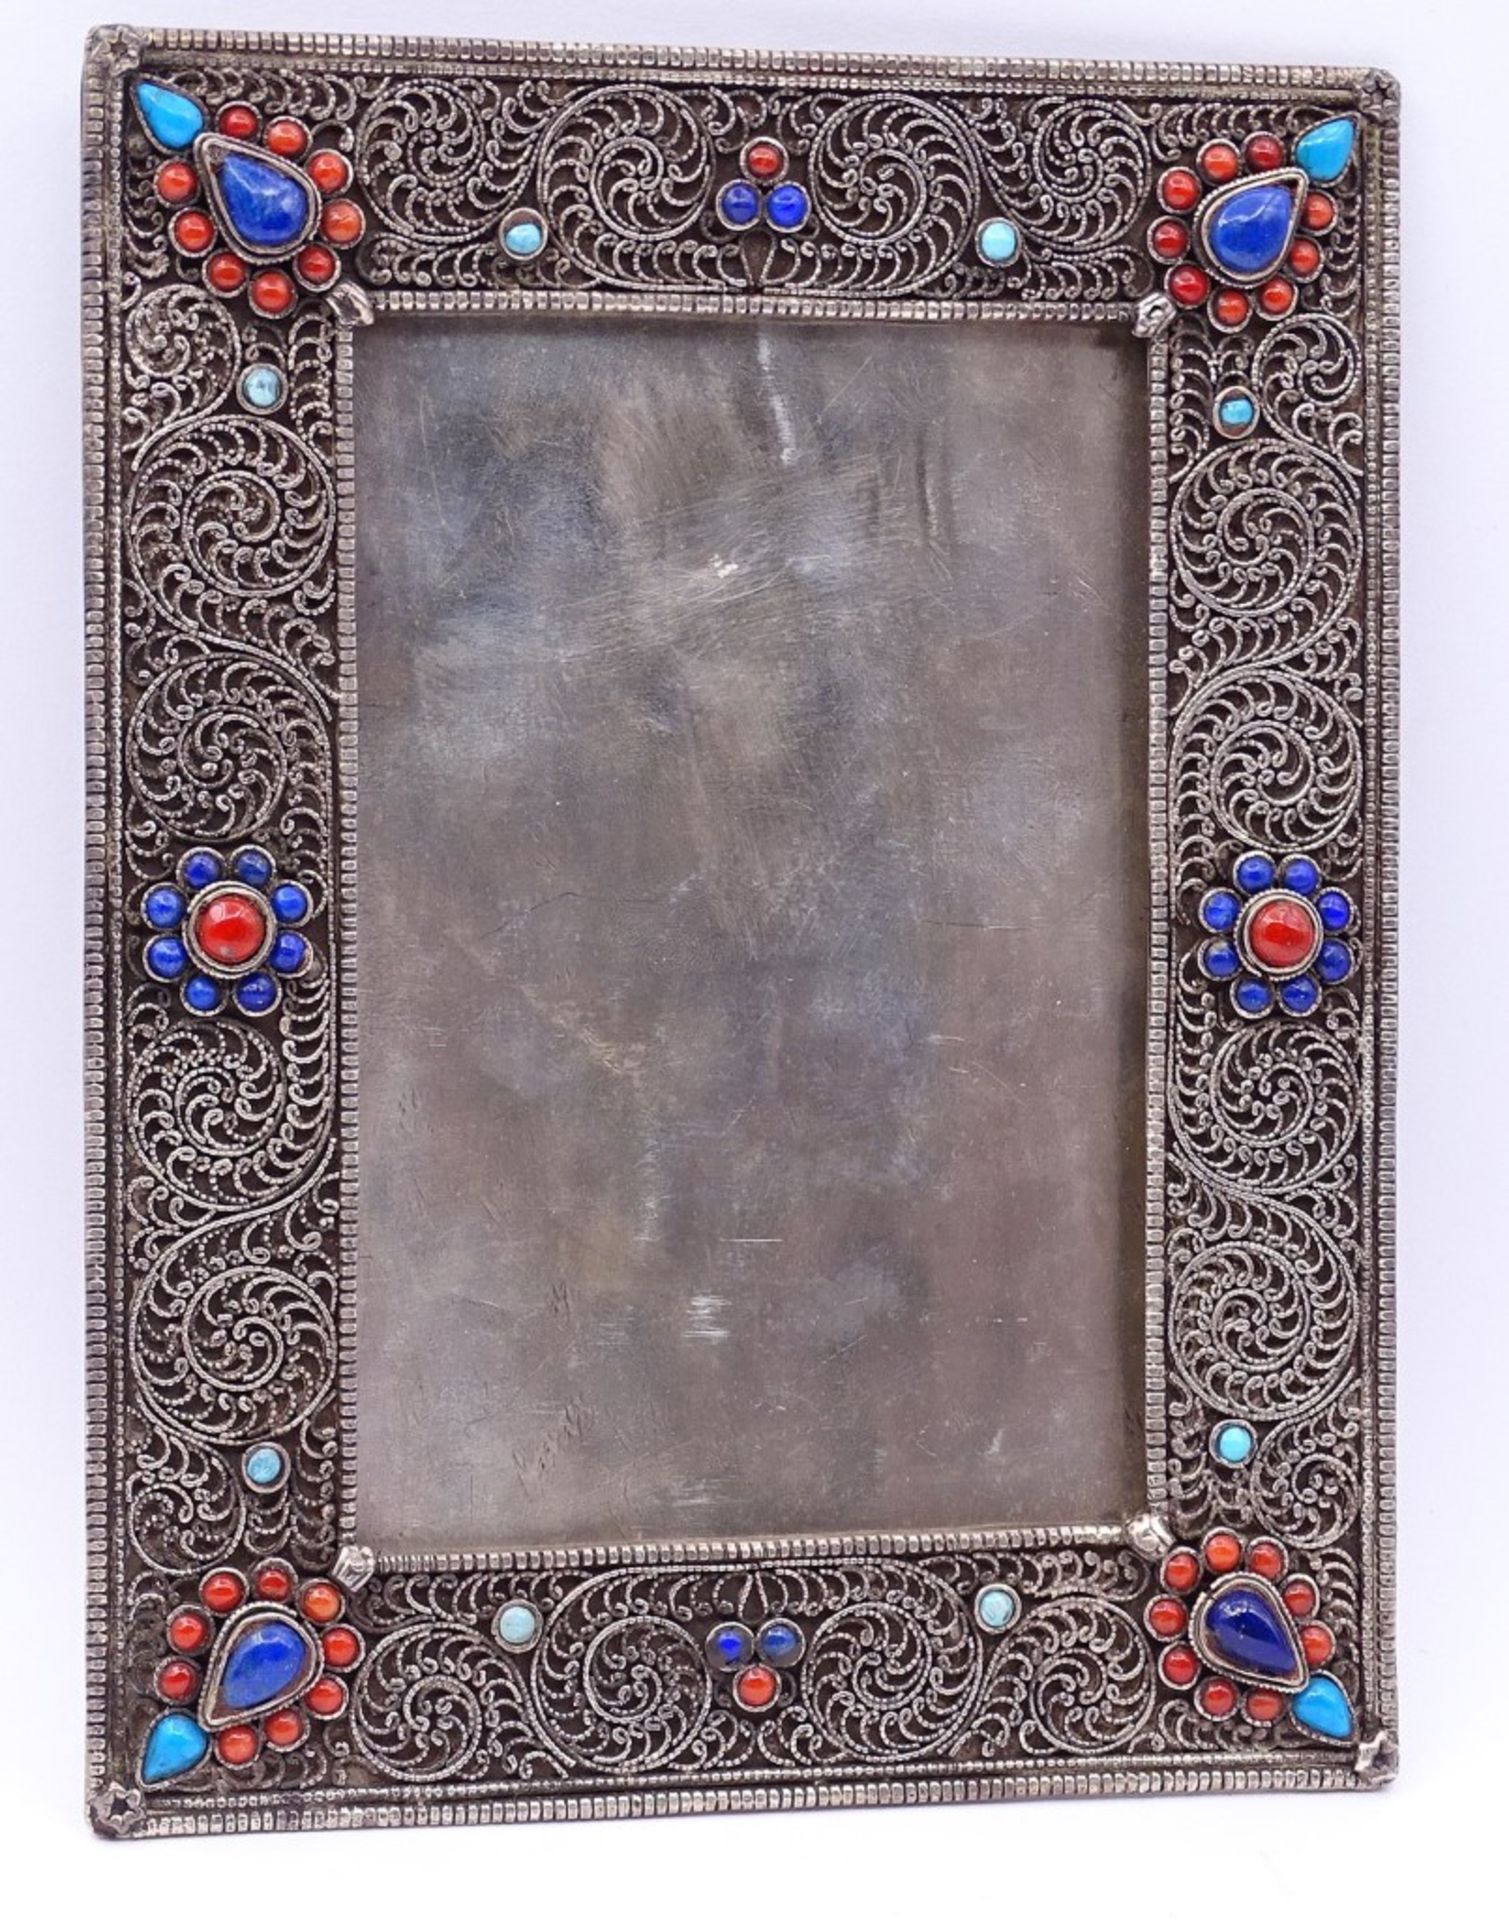 Tischfoto Rahmen in Sterling Silber mit Koralle,türkise und Lapislazuli, 17,5x13,5cm,278gr.,ohne